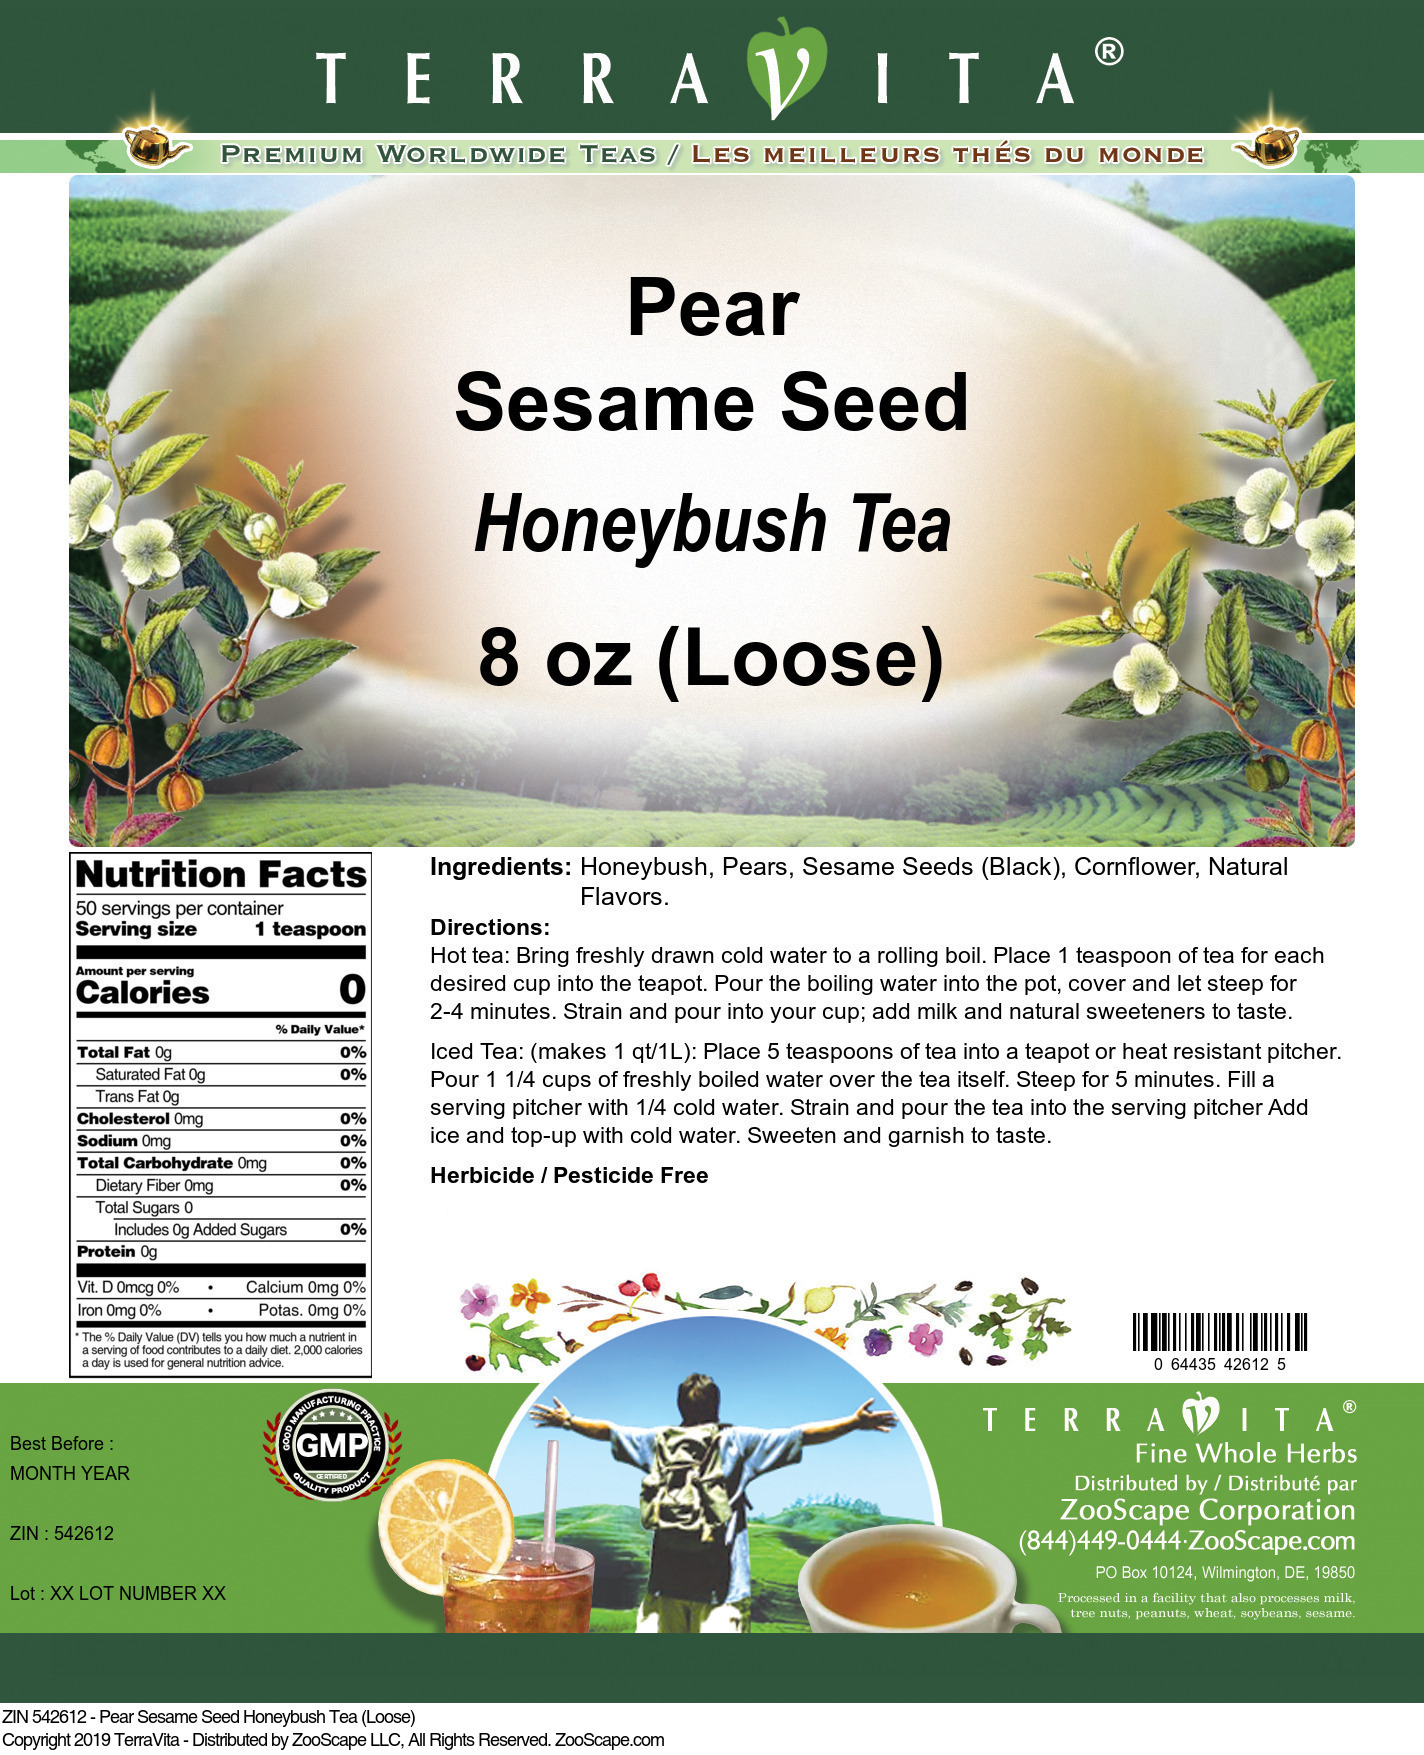 Pear Sesame Seed Honeybush Tea (Loose) - Label